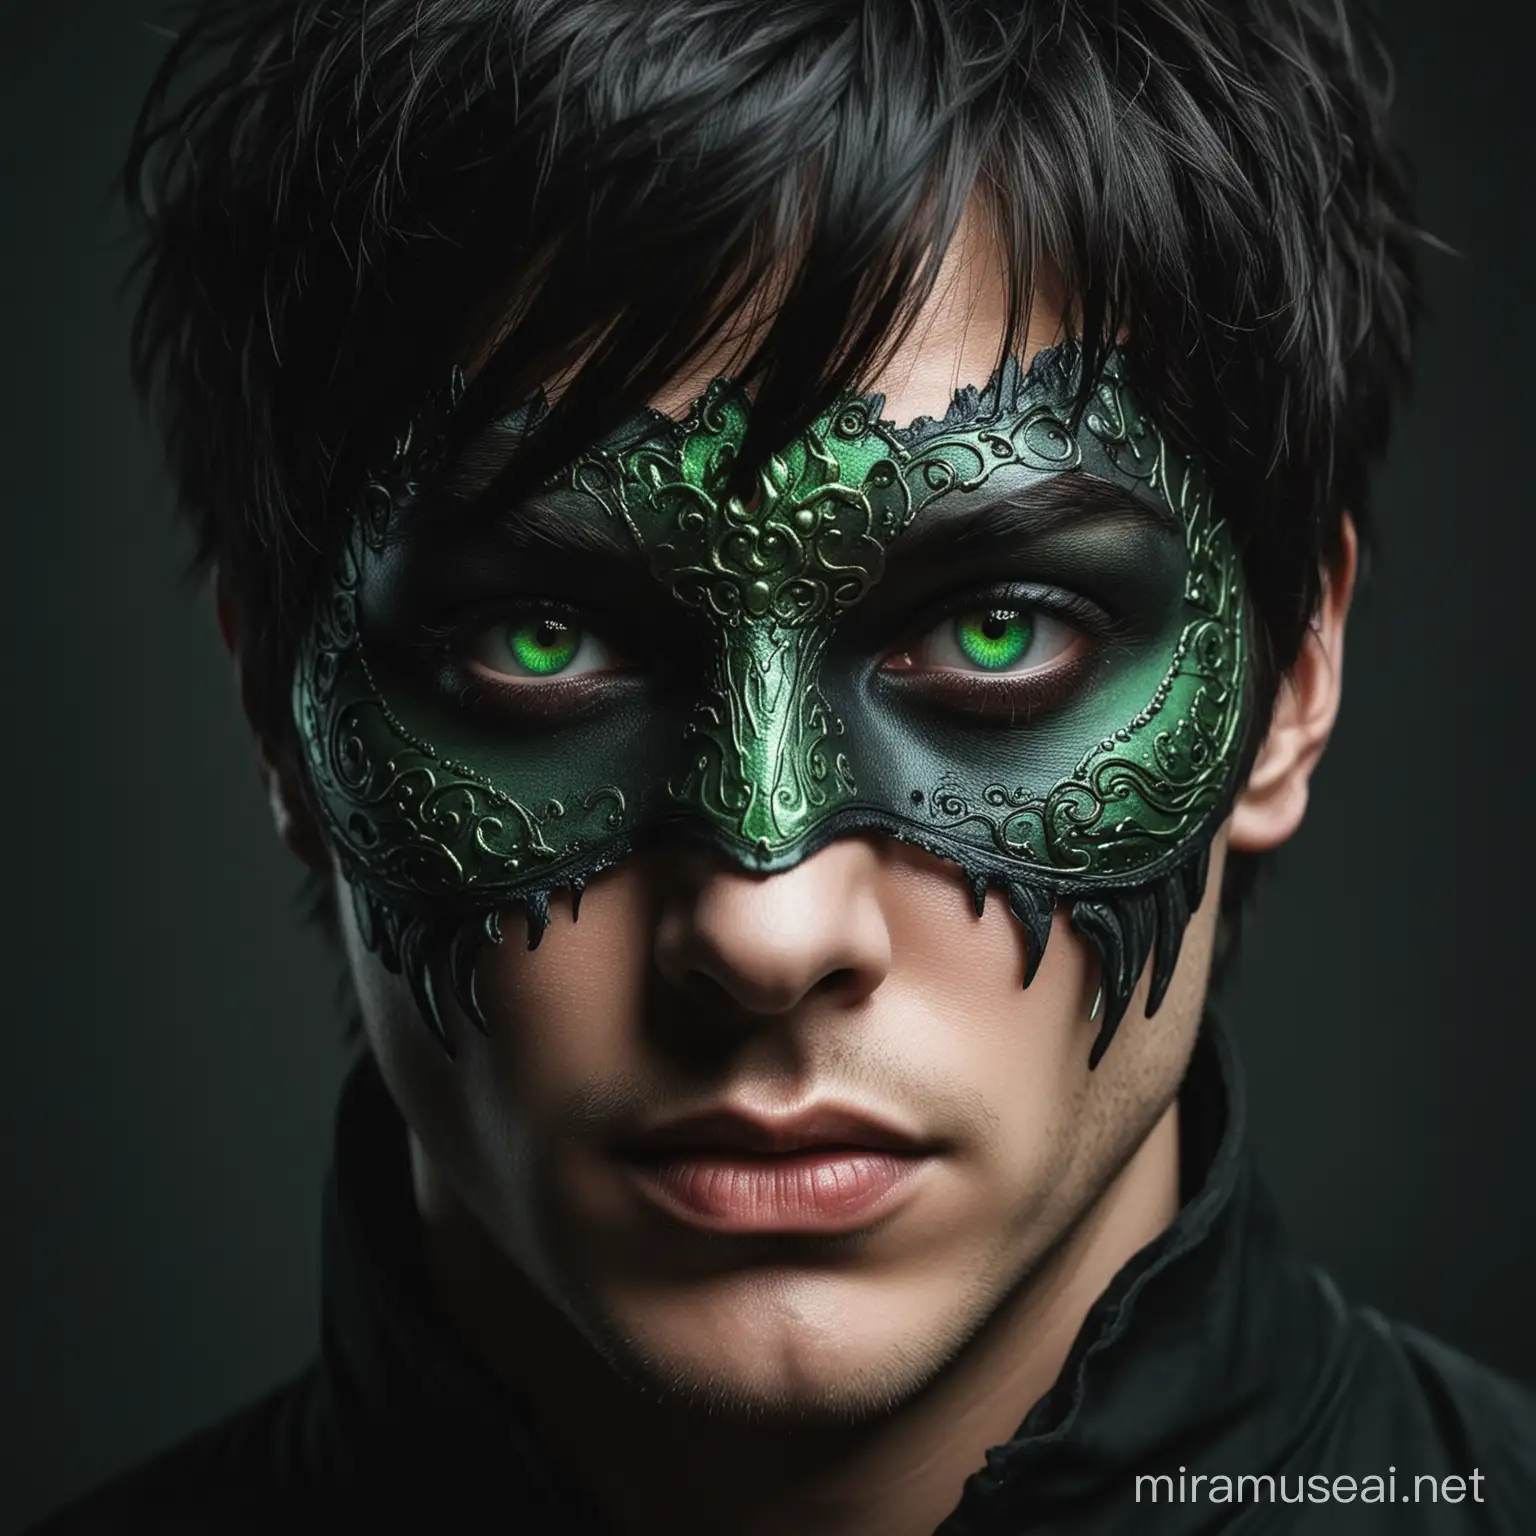 Темное фэнтези. Мужчина в маске до глаз. С темными короткими волосами. Глазами разных цветов, правый глаз алого цвета, левый глаз зеленого цвета. 